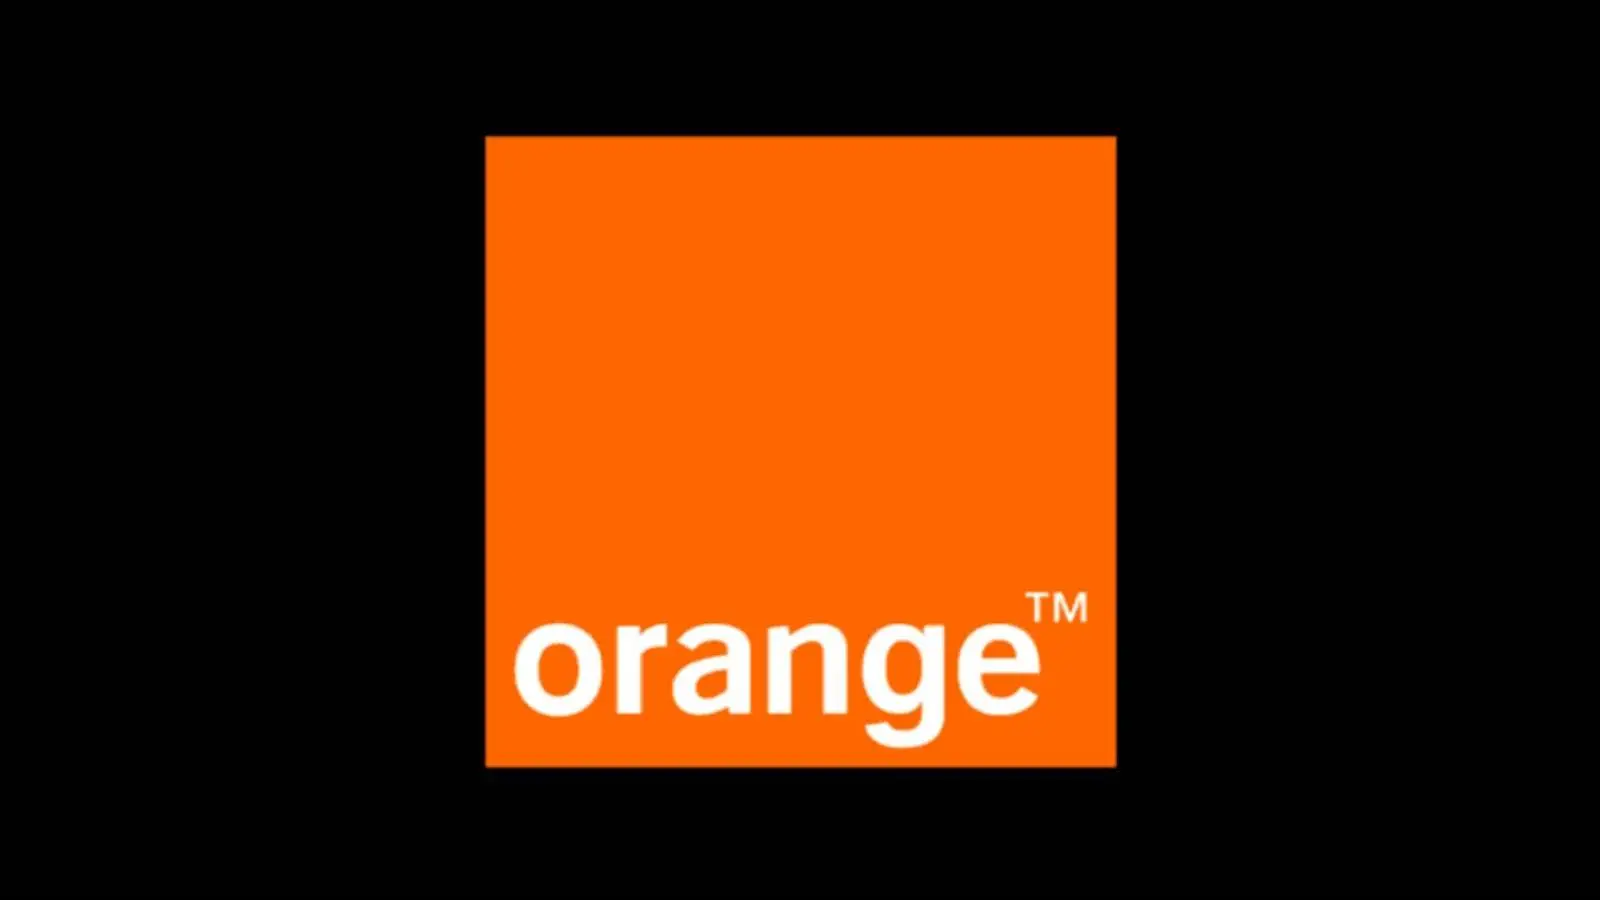 Orange Uimeste Clientii ofera GRATUIT 12 Luni Zile Romania